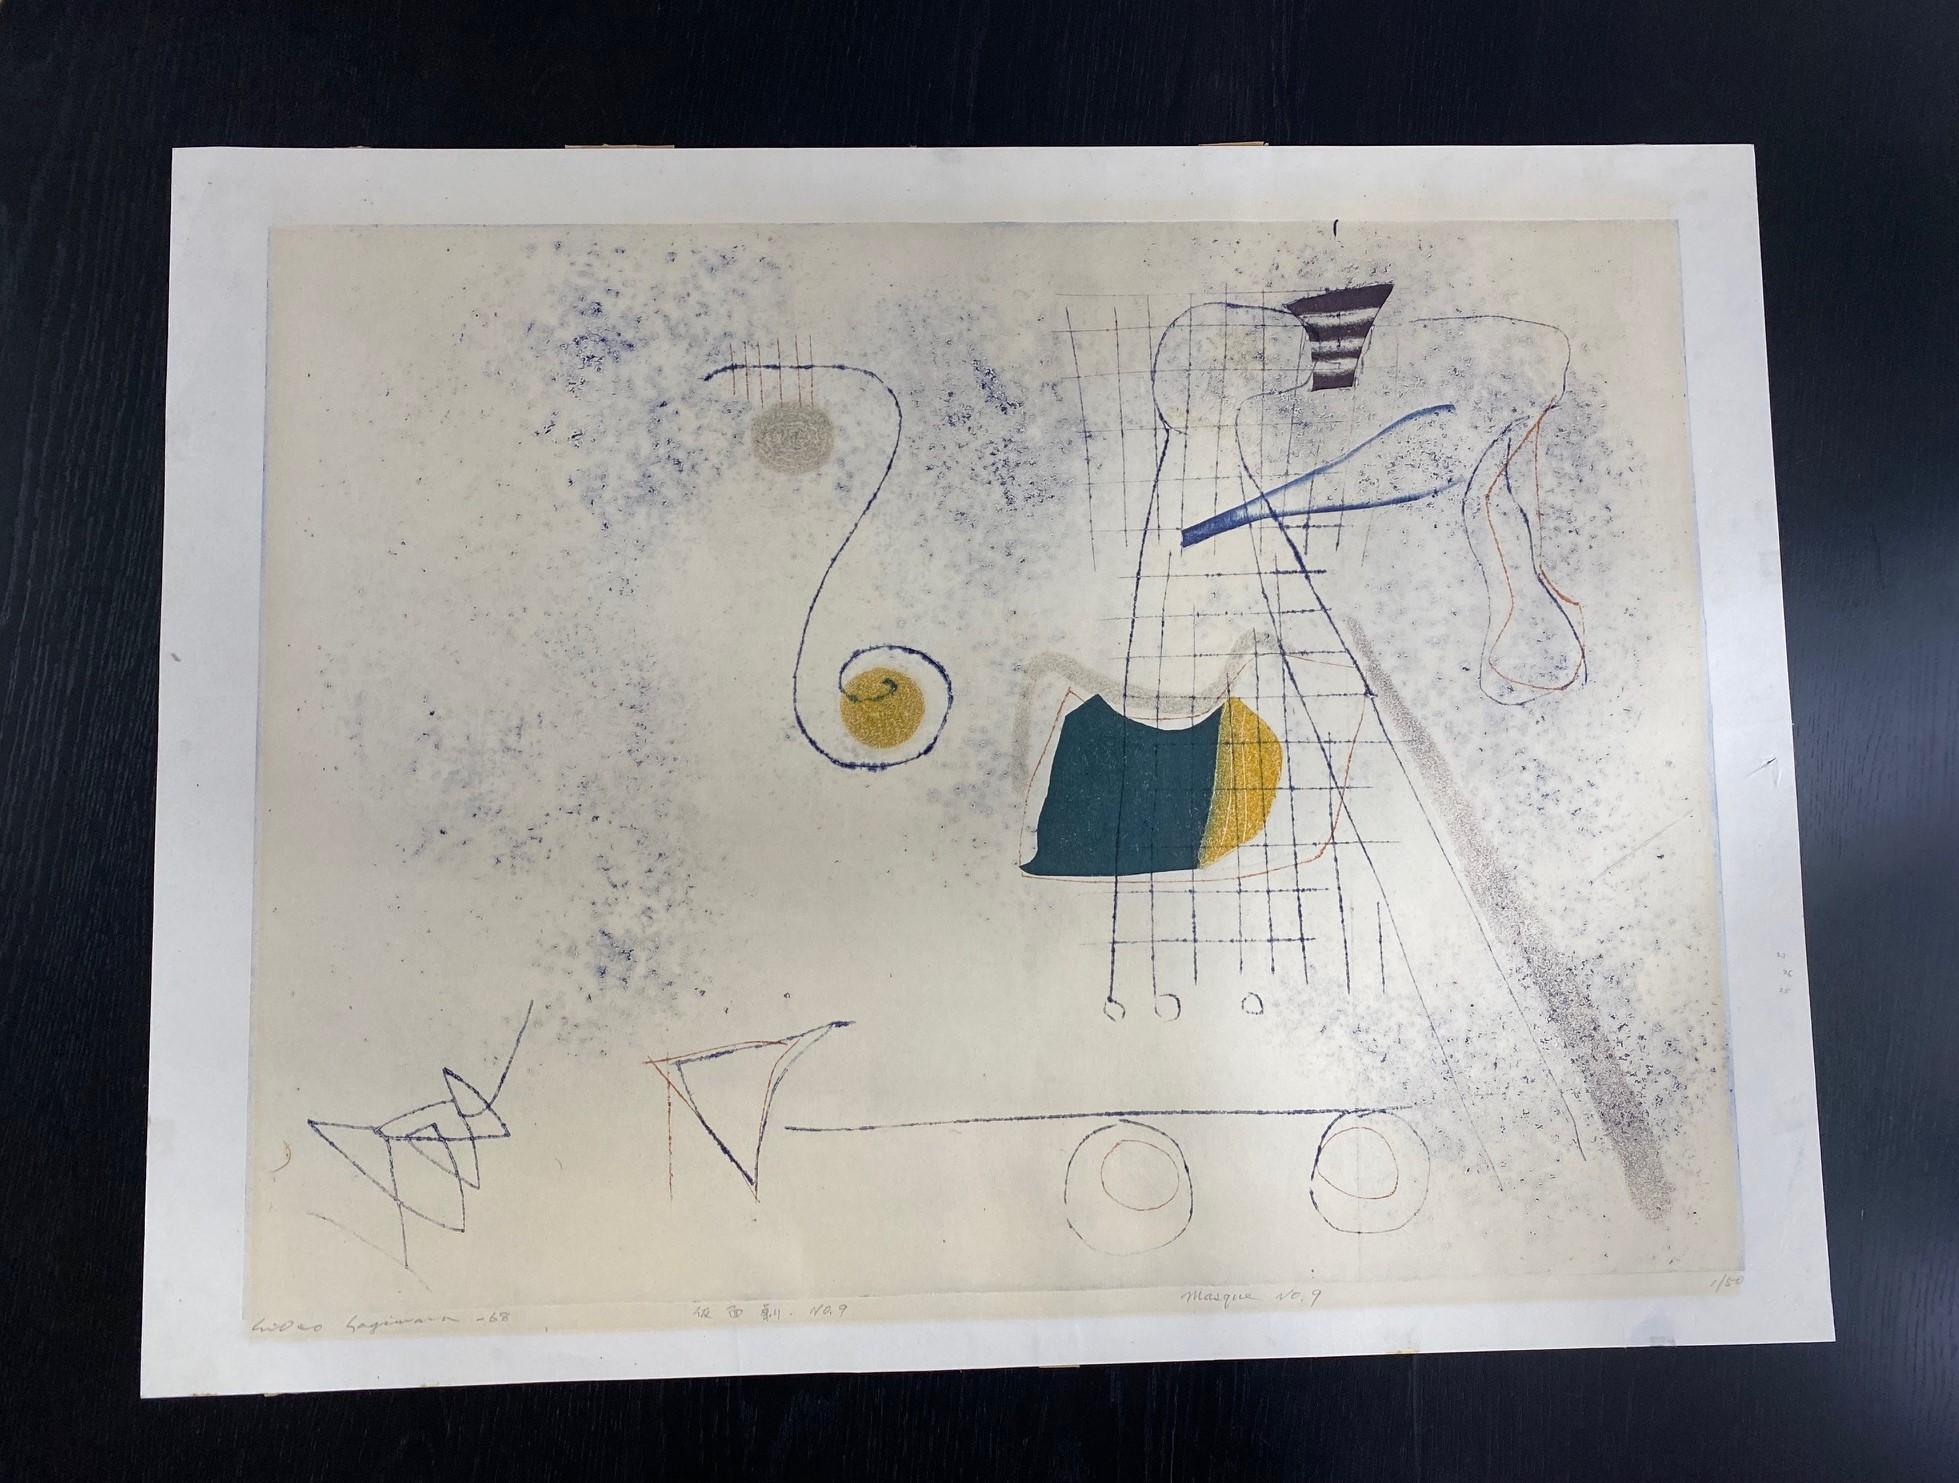 Wunderschöner großer abstrakter Druck des berühmten japanischen Meisterdruckers Hideo Hagiwara, der allgemein als einer der besten Sosaku Hanga-Künstler der Nachkriegszeit gilt. 1989 wurde er vom Nobelpreiskomitee mit einer Goldmedaille für fünf